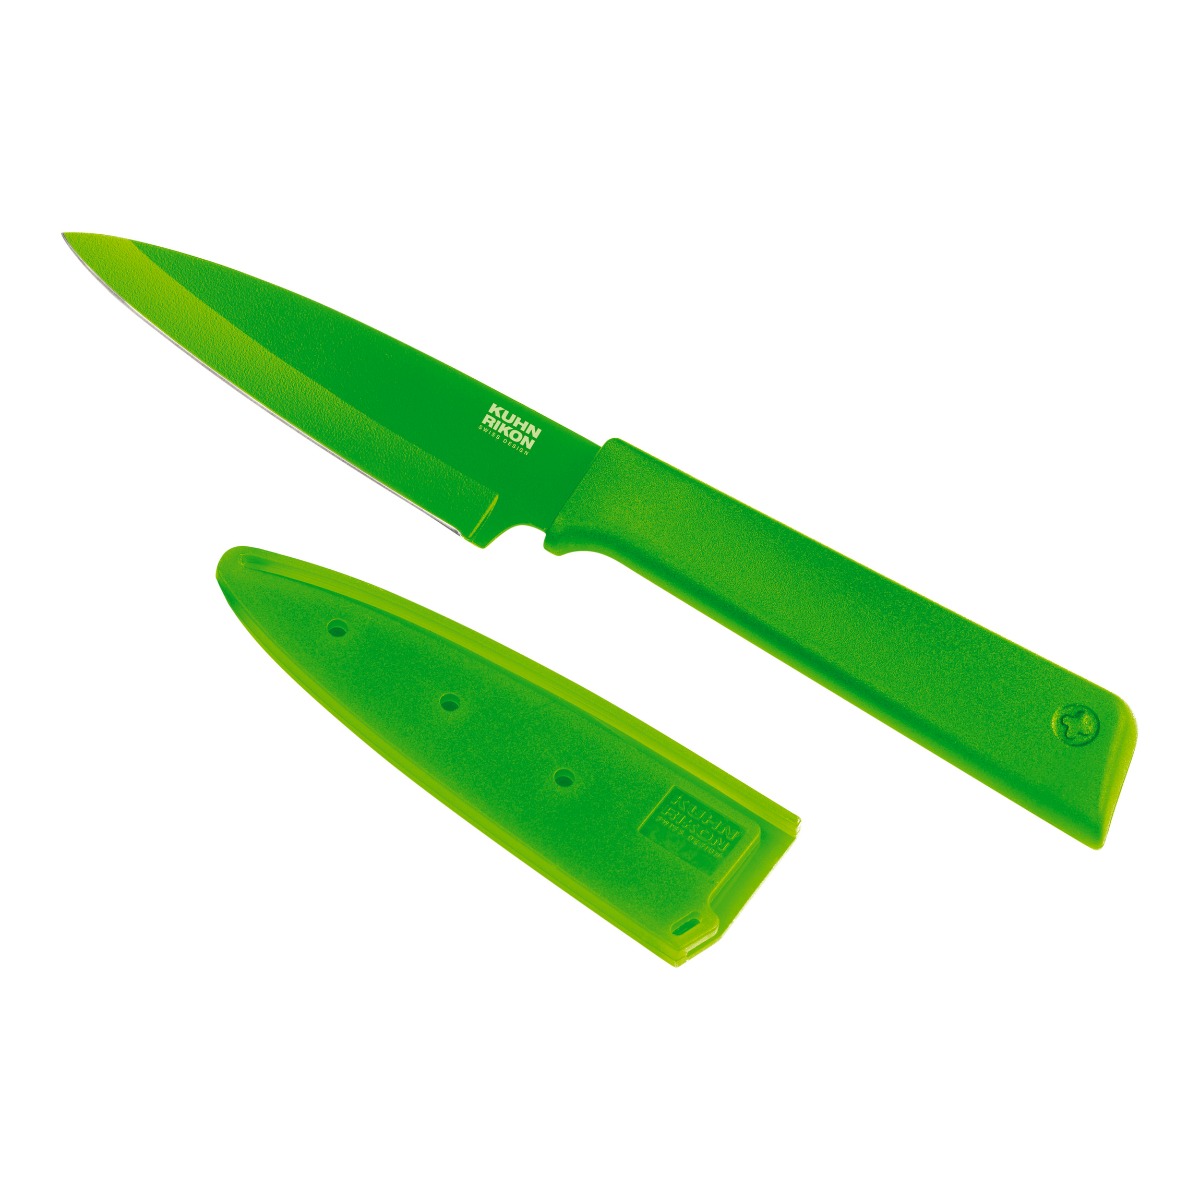 Kuhn Rikon - Colori(r)+ Paring Knife green